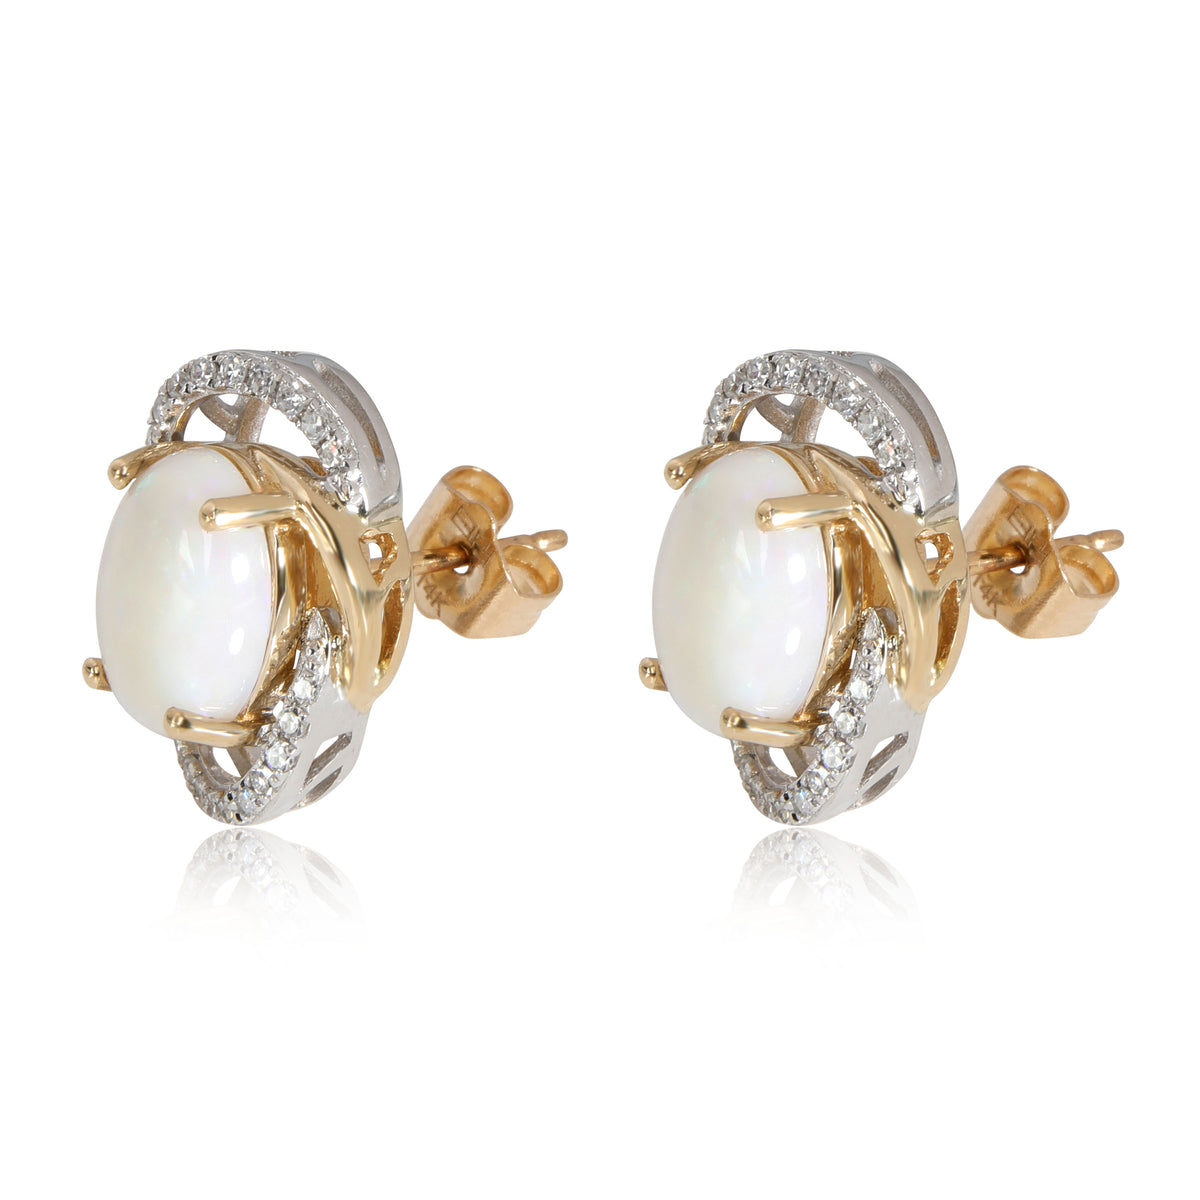 Effy Aurora Opal Diamond Stud Earring in 14K Yellow Gold 0.16 CTW